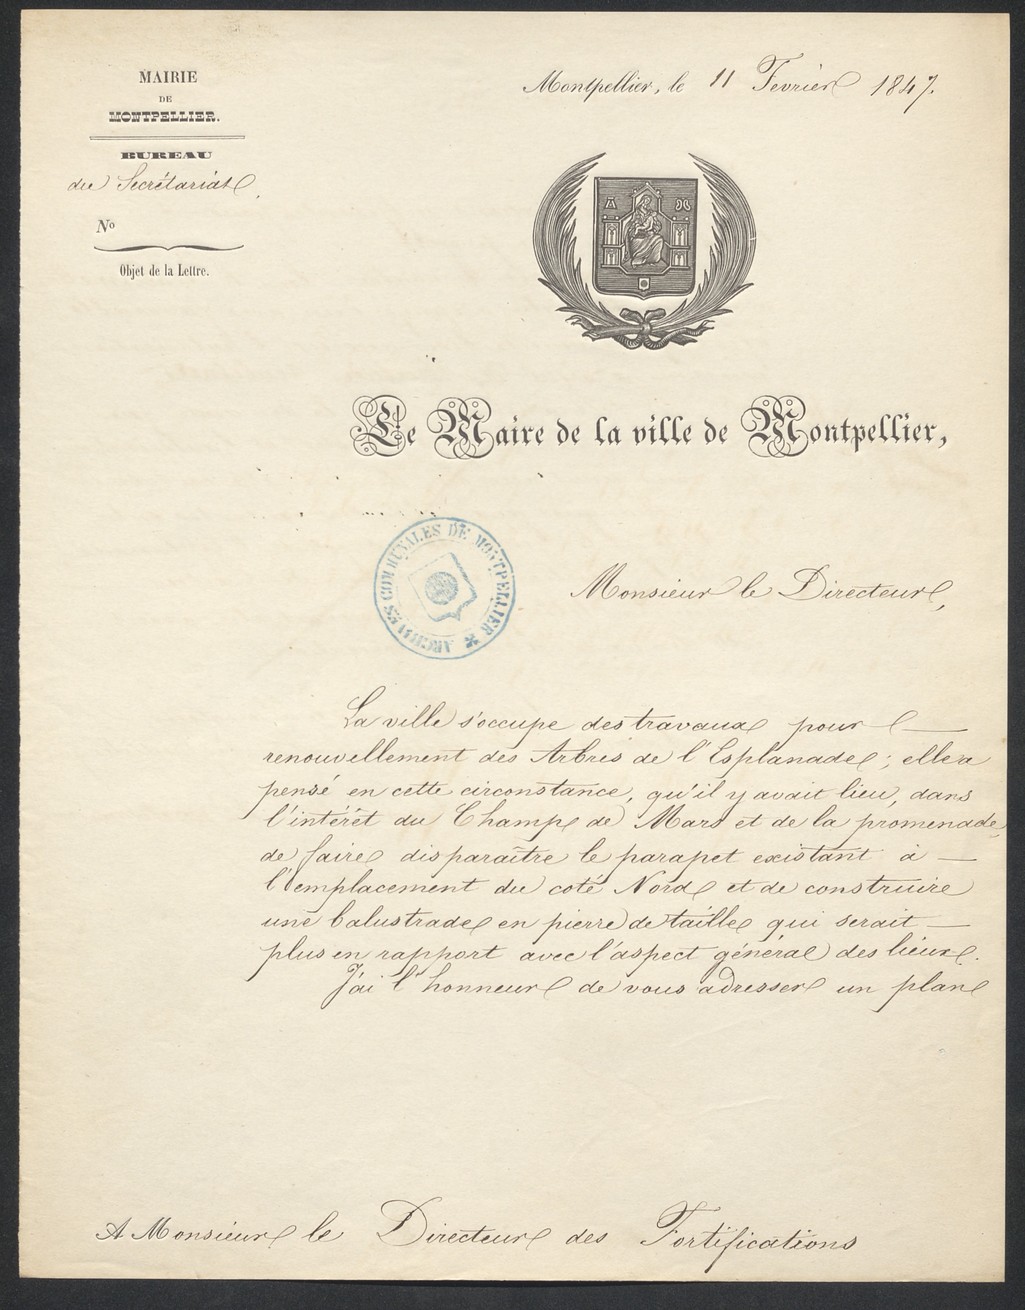 Lettre du maire pour balustrade, 11 février 1847. AMM, série 